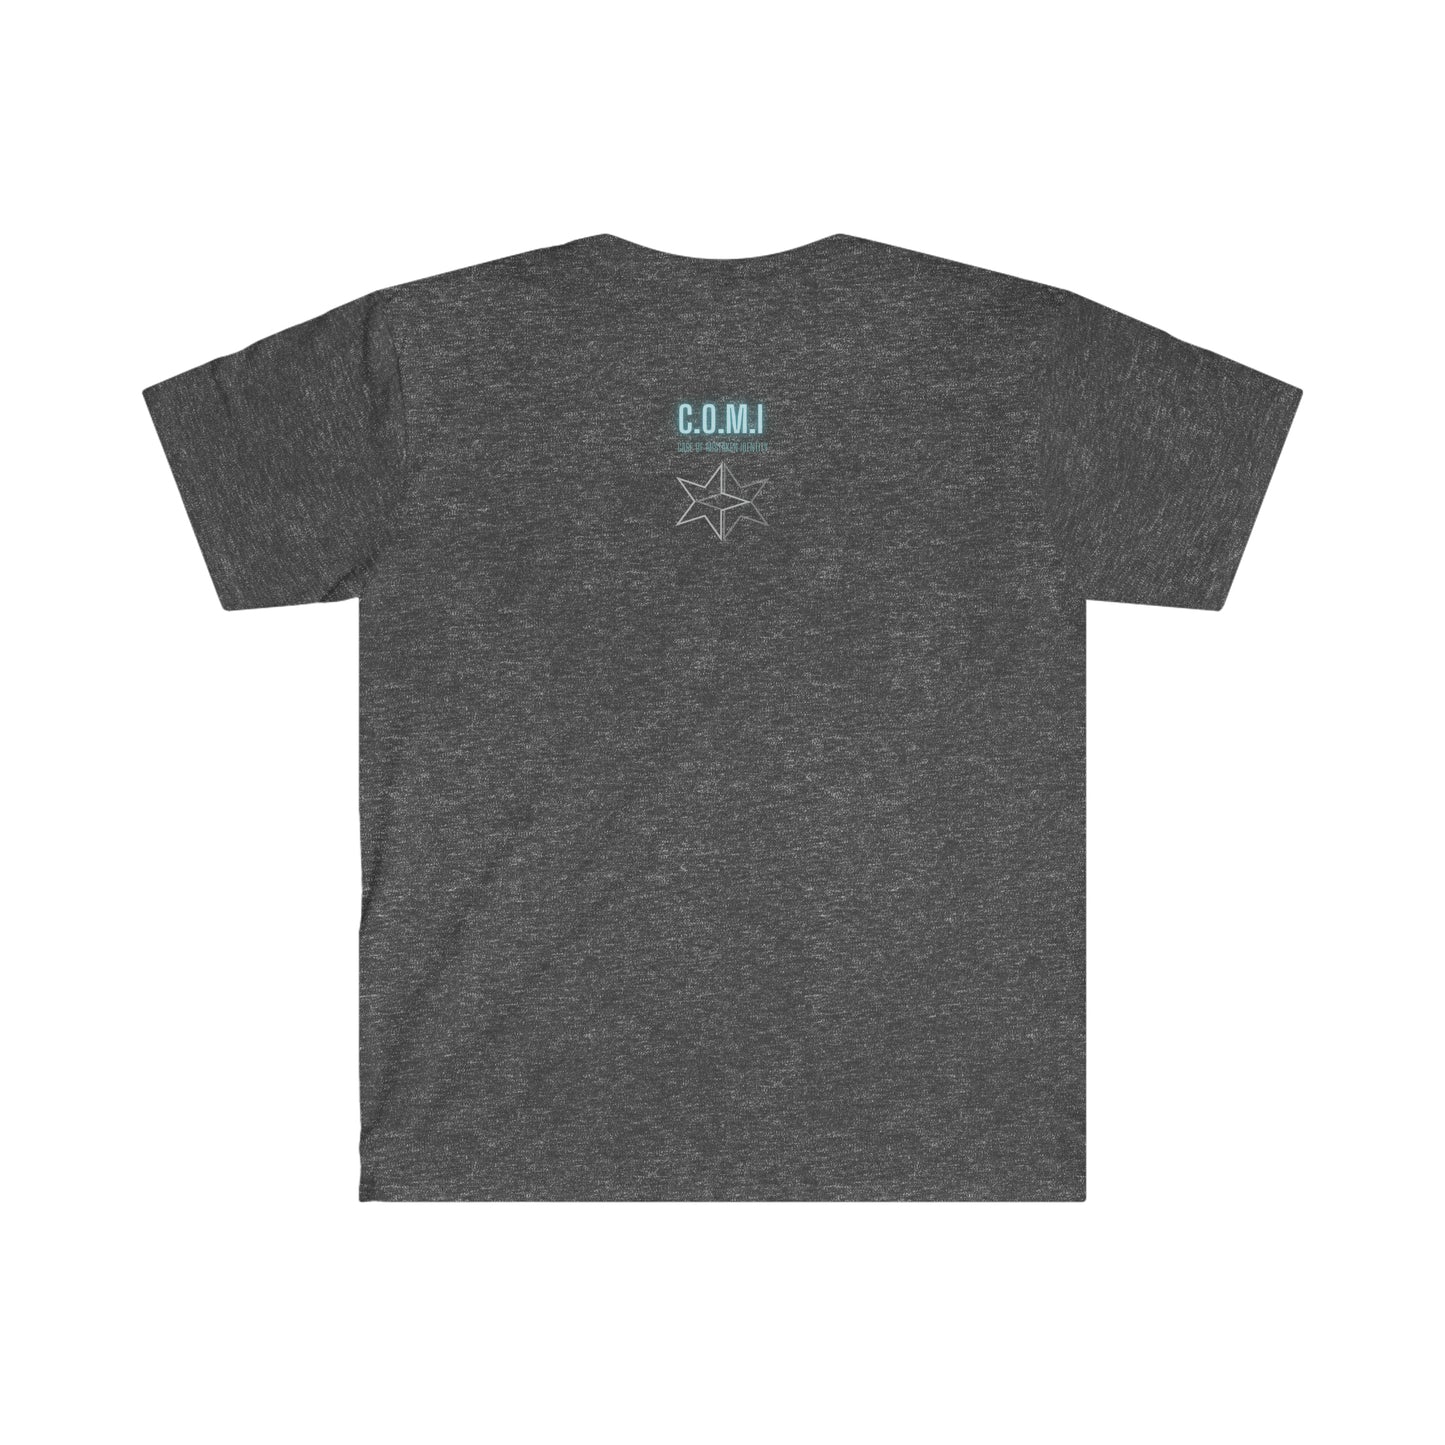 E30 M3 - Unisex Softstyle T-Shirt